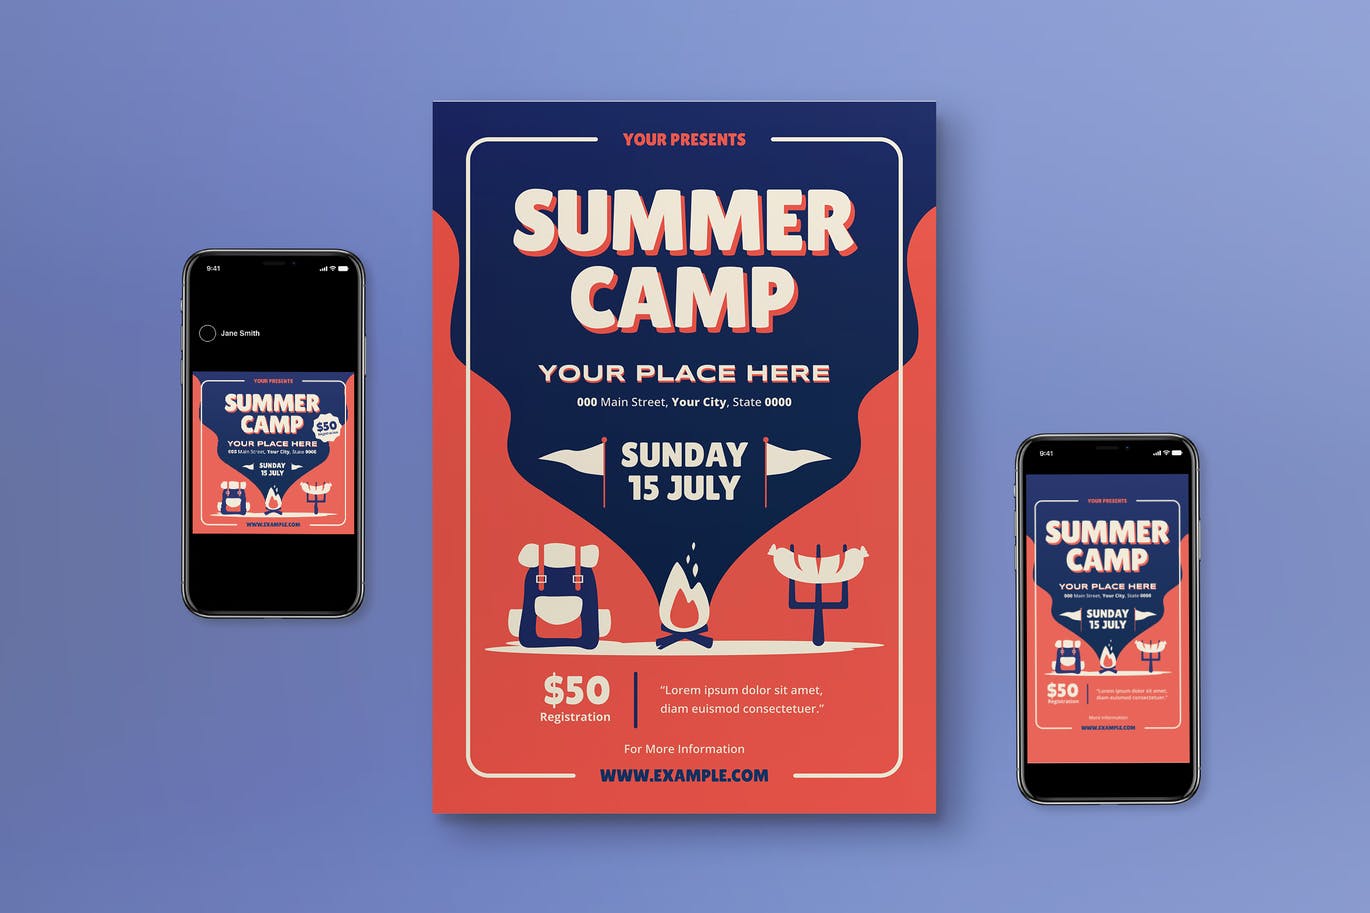 夏令营传单设计 Sumer Camp Flyer Set 设计素材 第1张